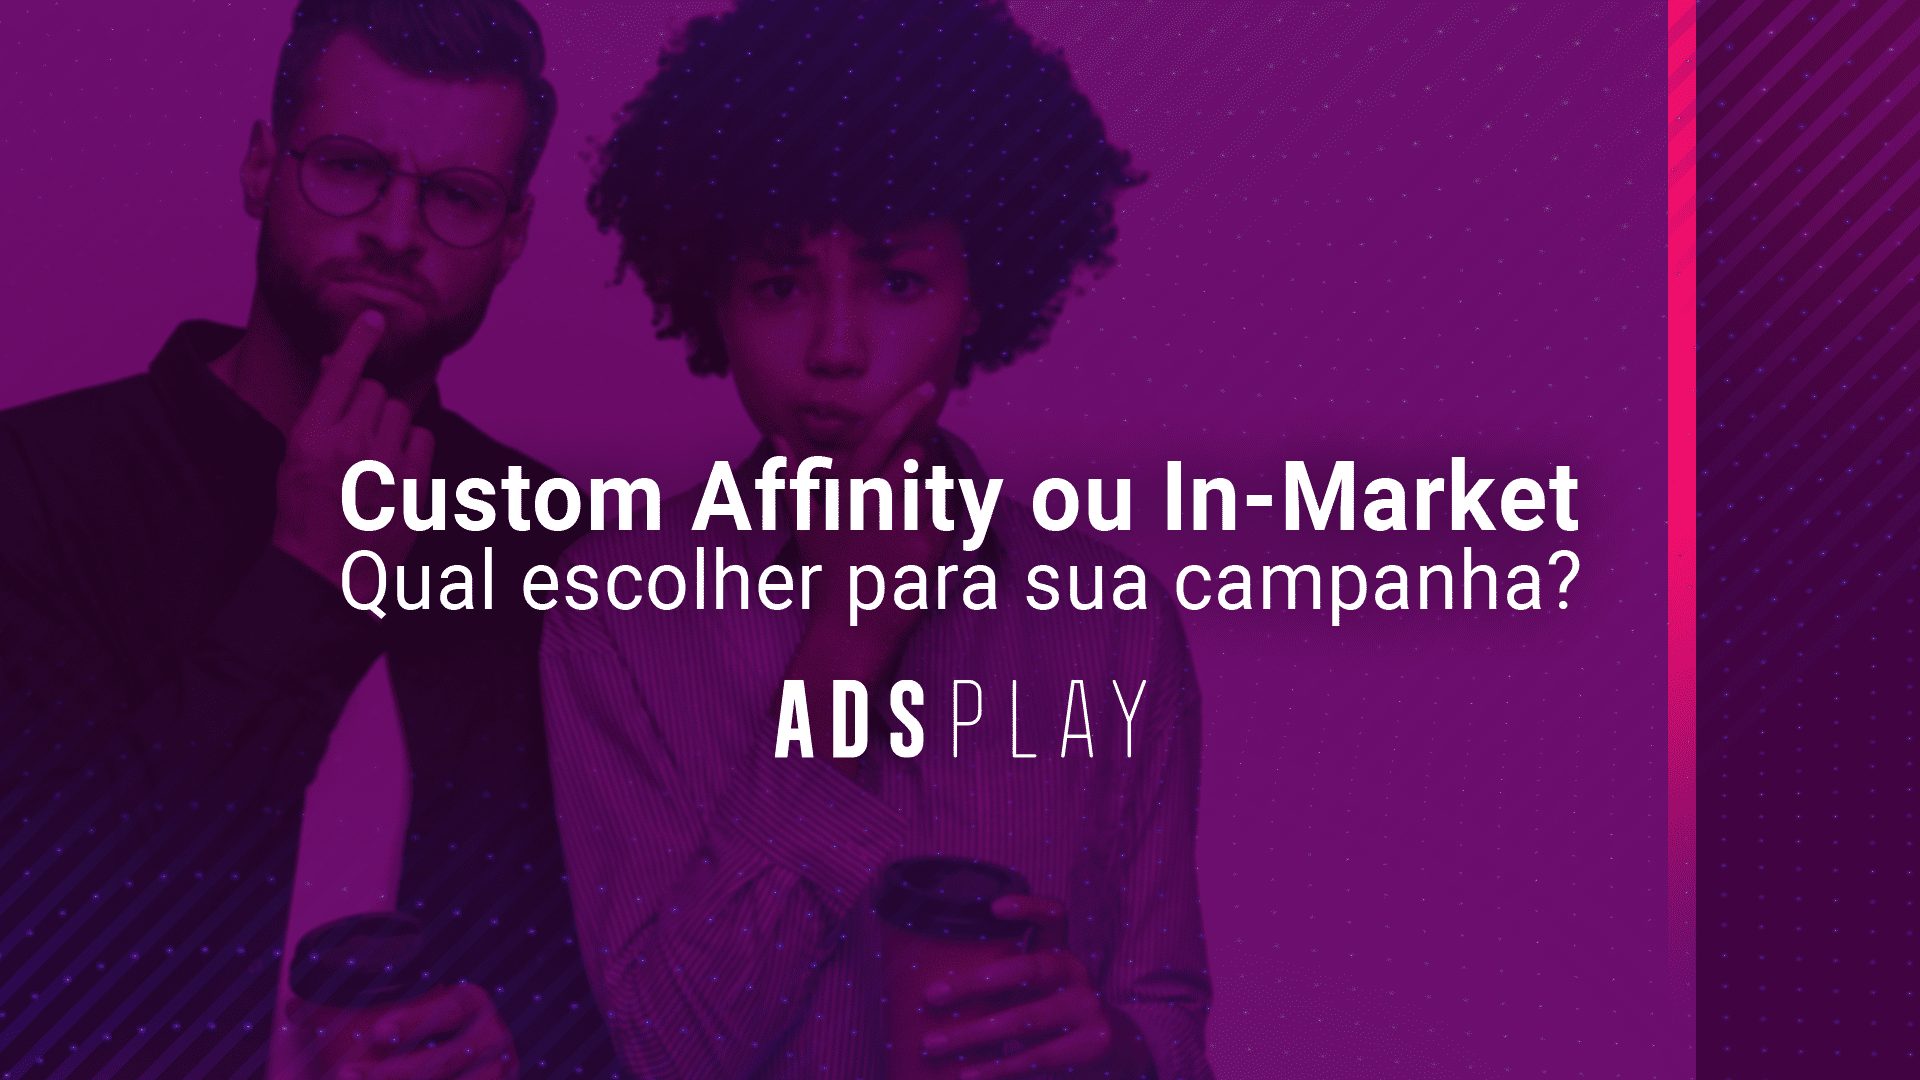 Custom affinity ou in-market: qual escolher para sua campanha?